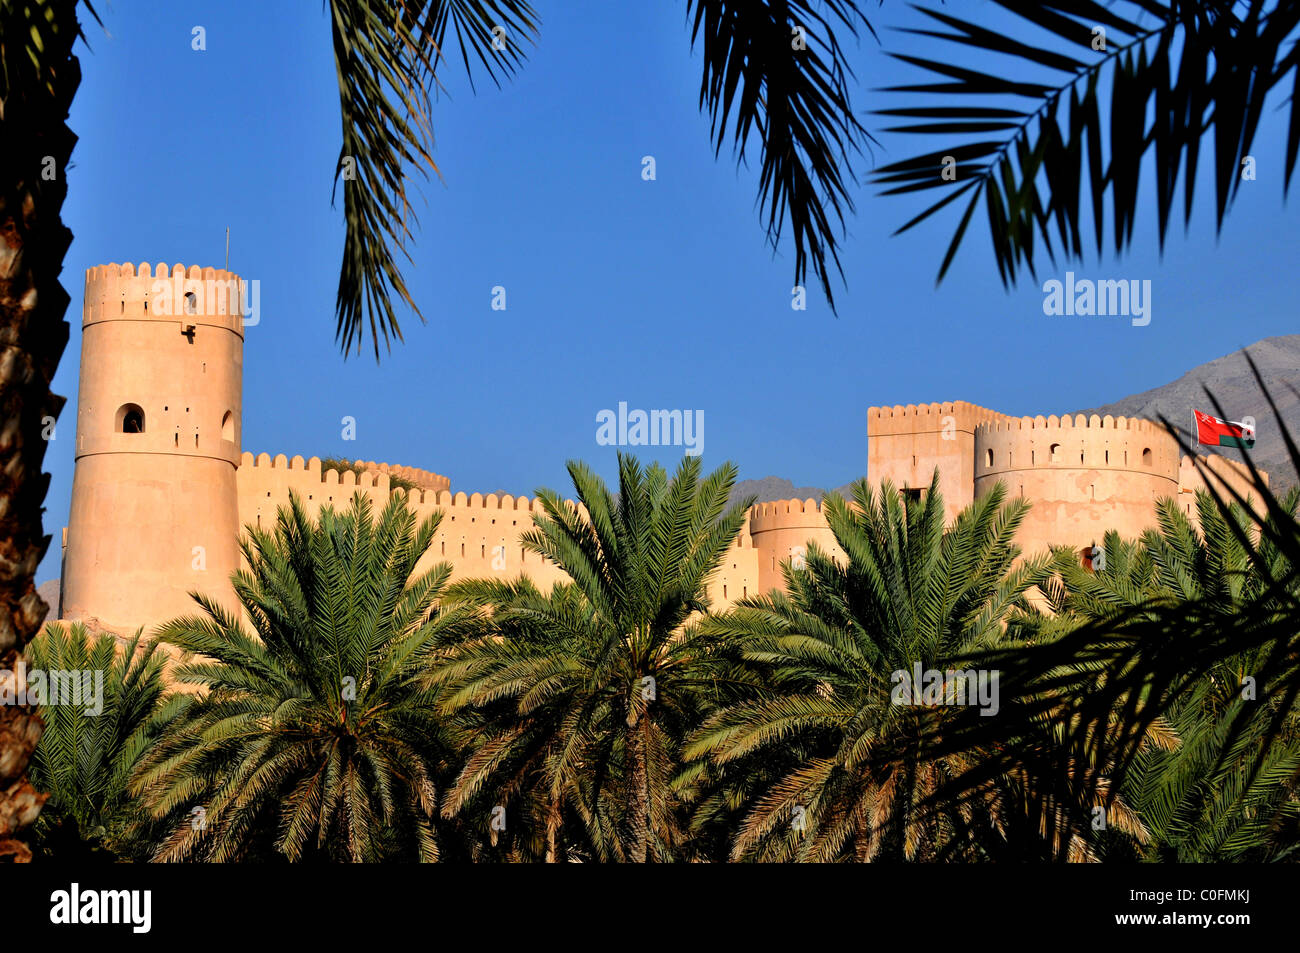 Nakhal Fort situato in corrispondenza del bordo del Jebel Akhdar montagne. Il Sultanato di Oman. Foto Stock